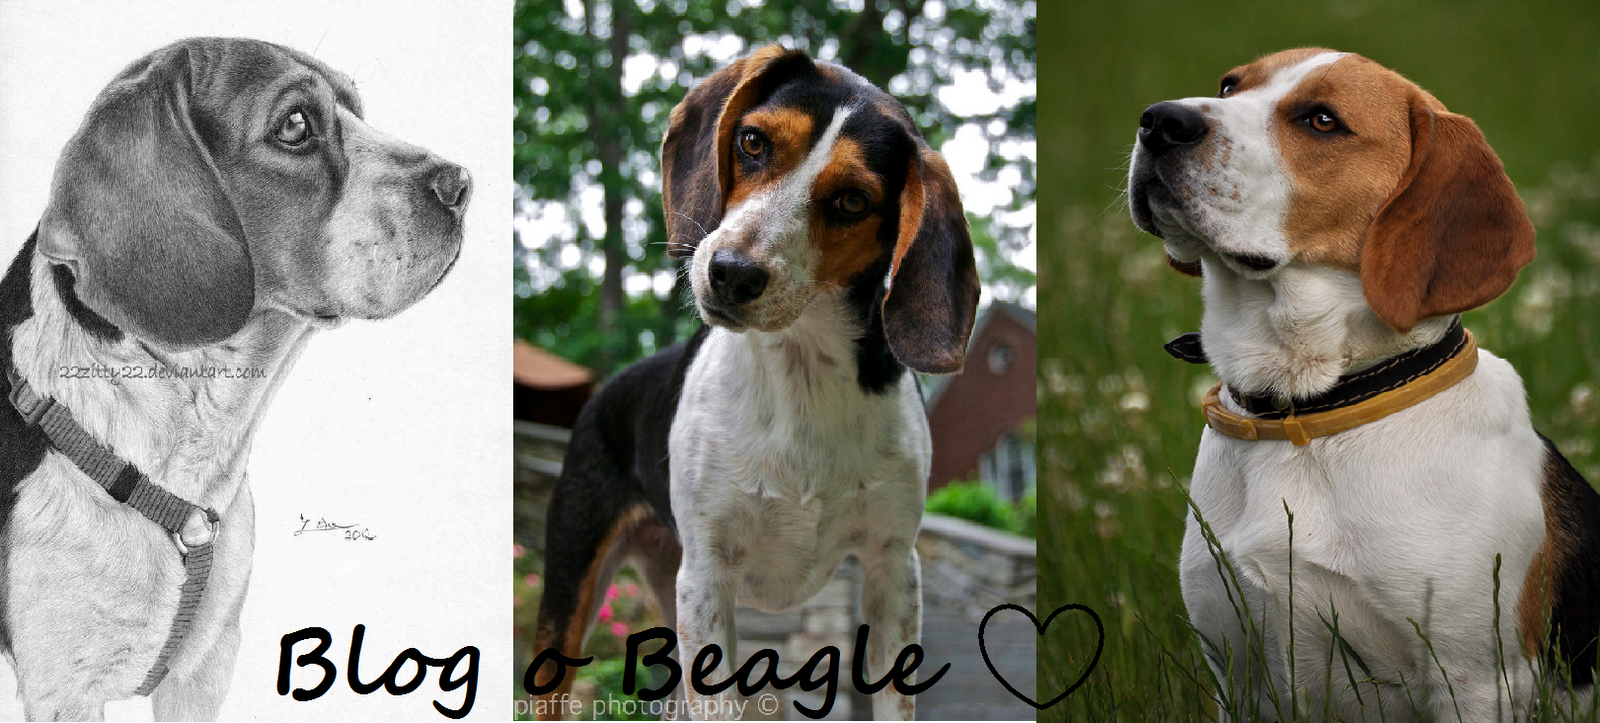 Beagle -najlepsi przyjaciele!